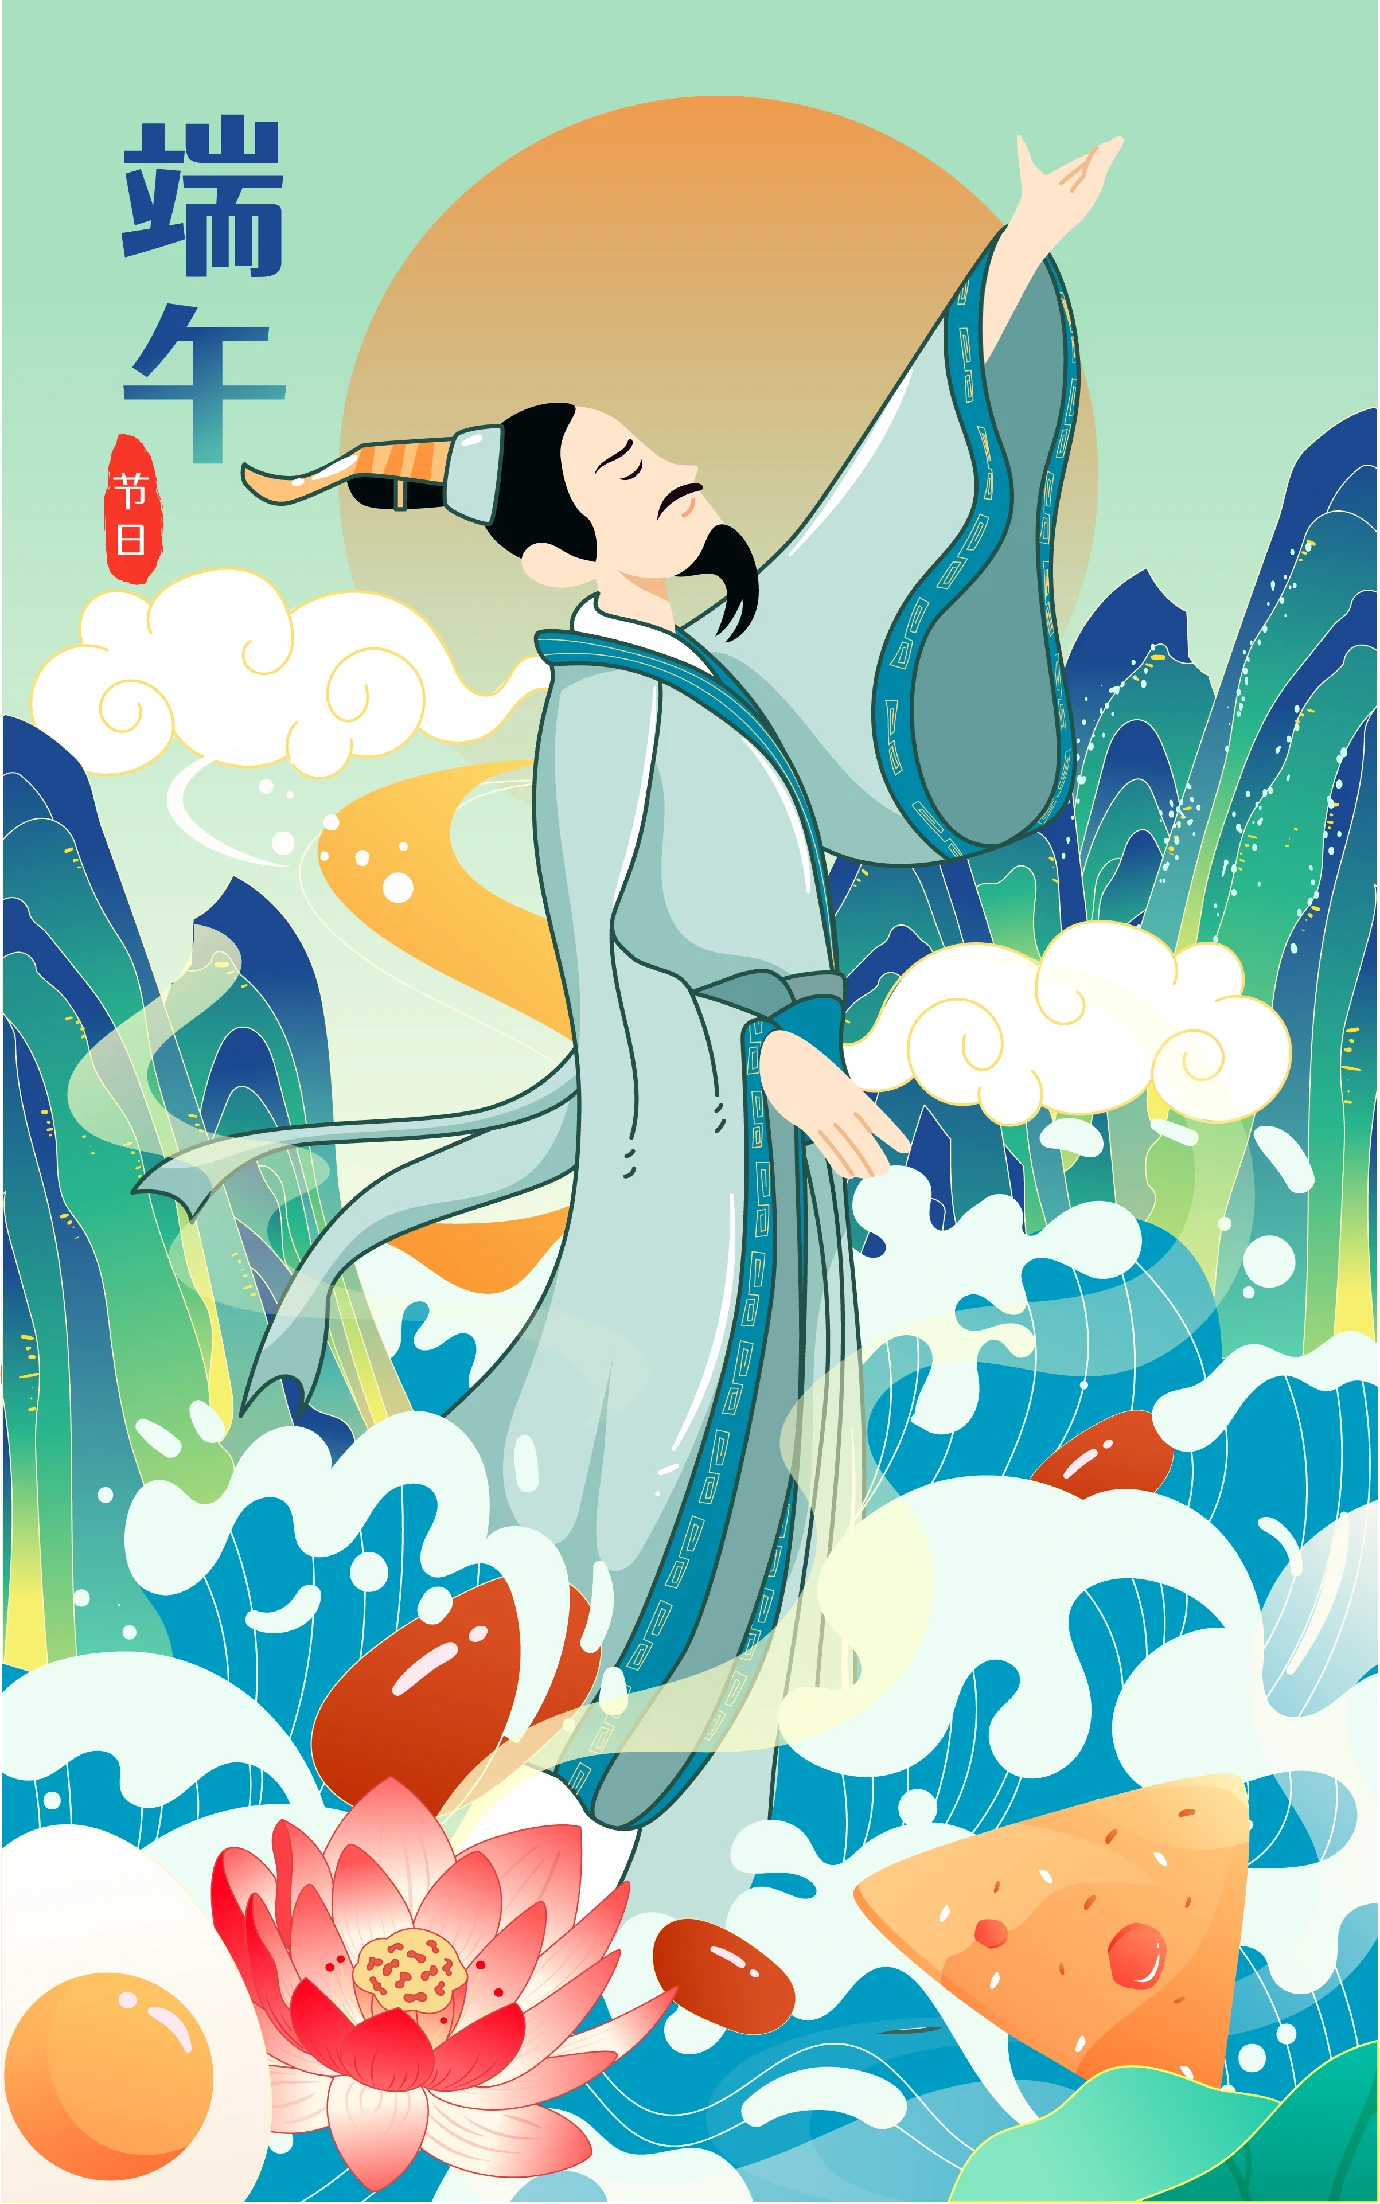 中国风中国传统节日端午节粽子龙舟屈原插画海报AI矢量设计素材【020】